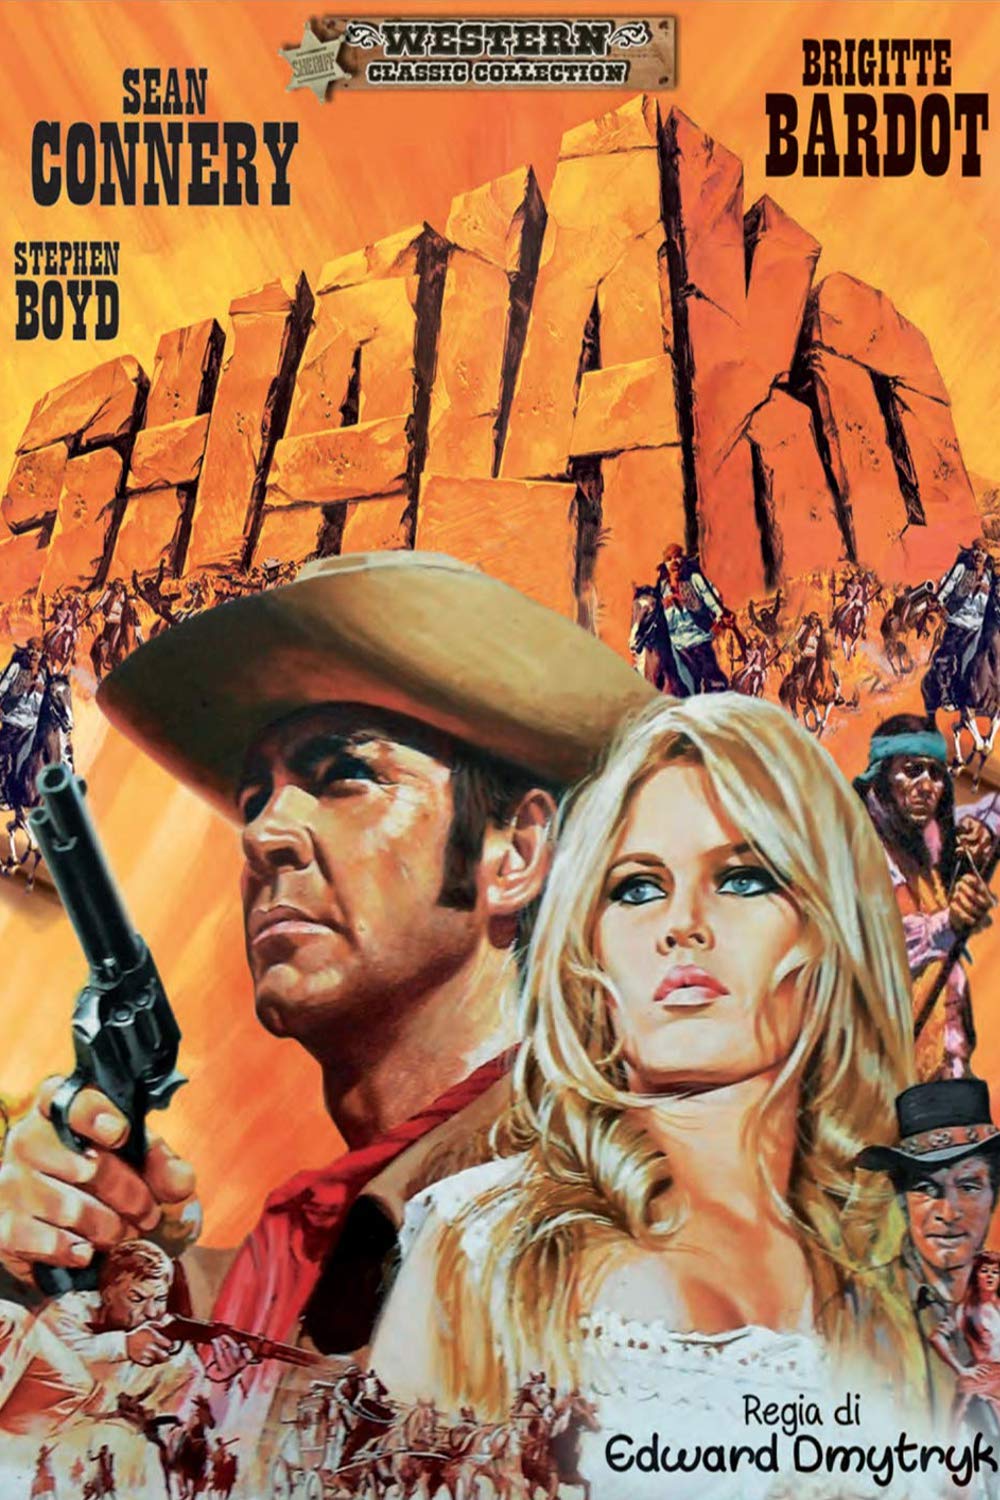 Shalako (1968)